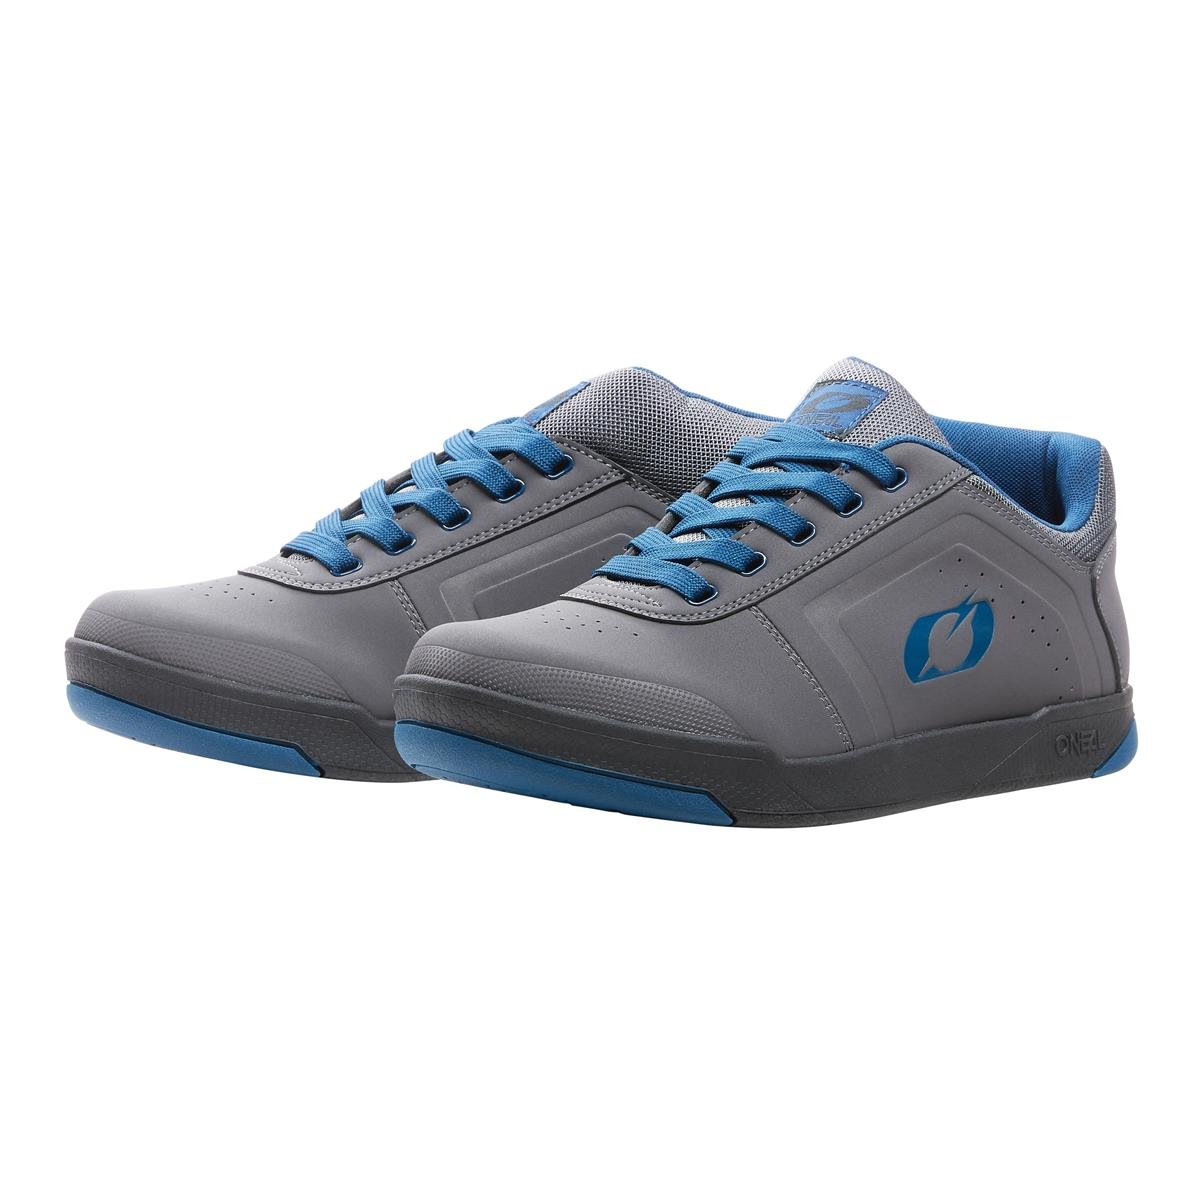 O'Neal Chaussures VTT Pinned Pro Gris/Bleu